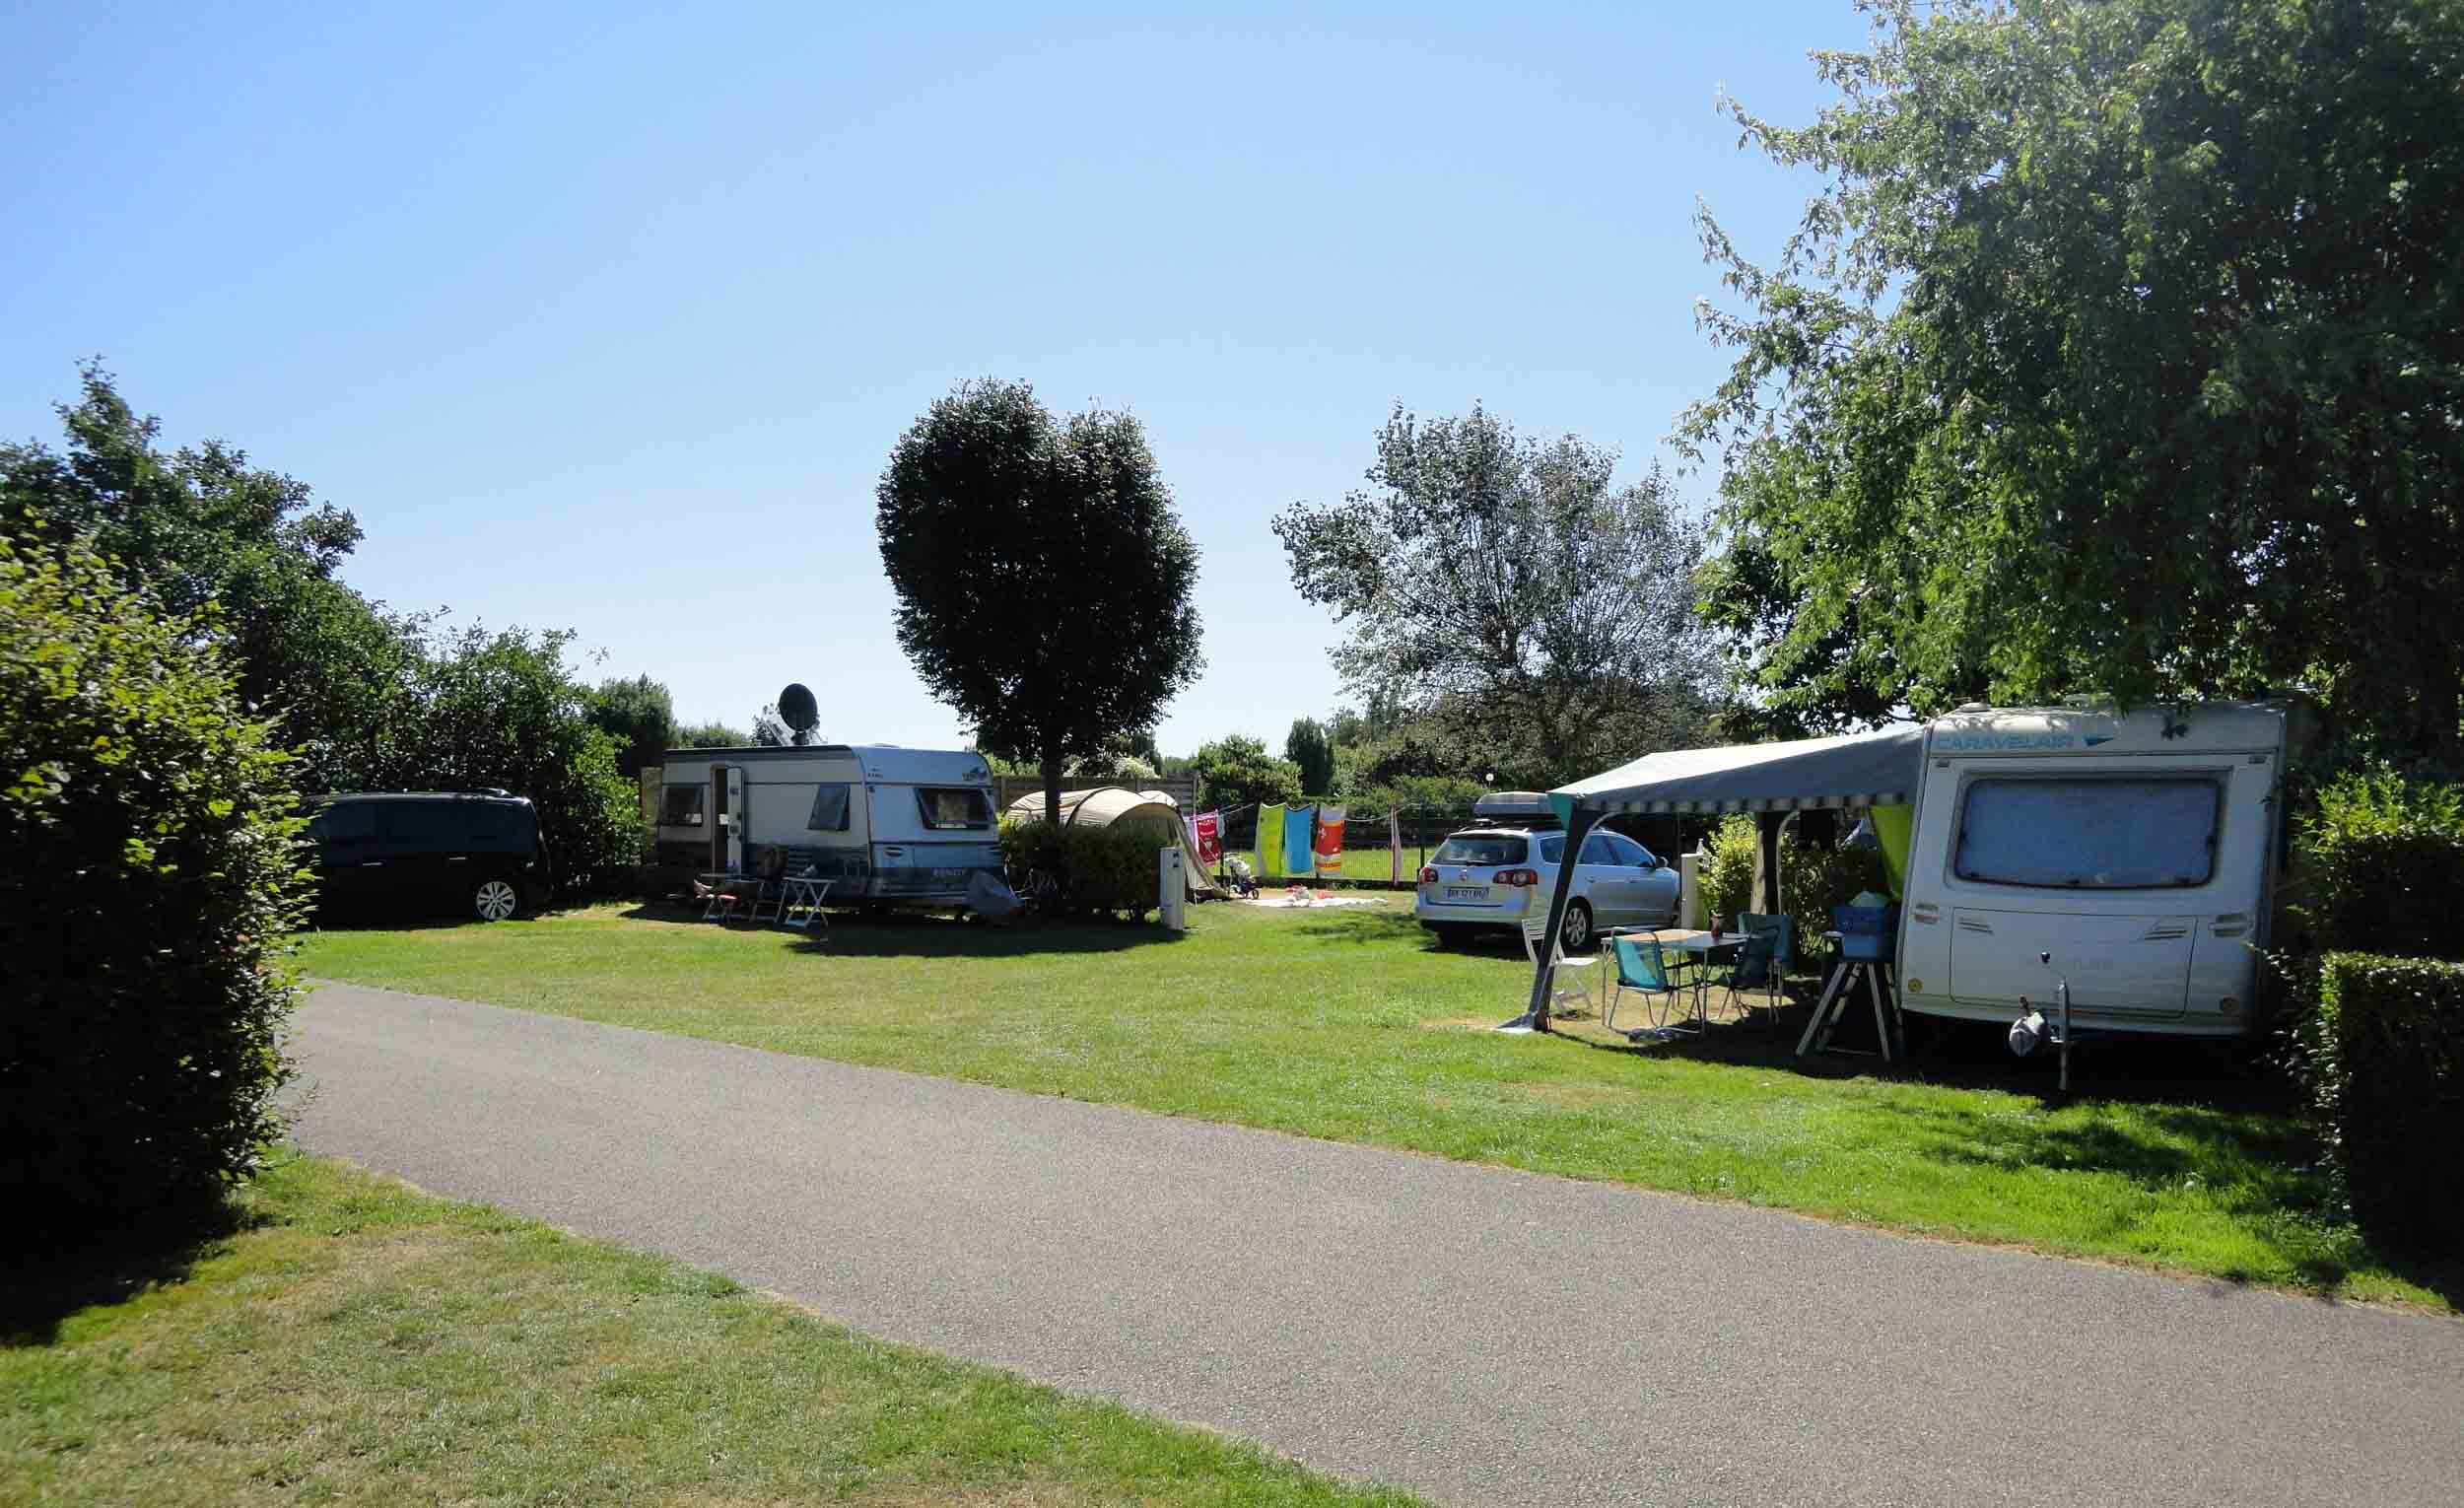 Notre Camping 3 étoiles à Carnac dispose d'emplacements avec éléctricité et point d'eau individuel afin de passer votre séjour en tente, caravane et camping car